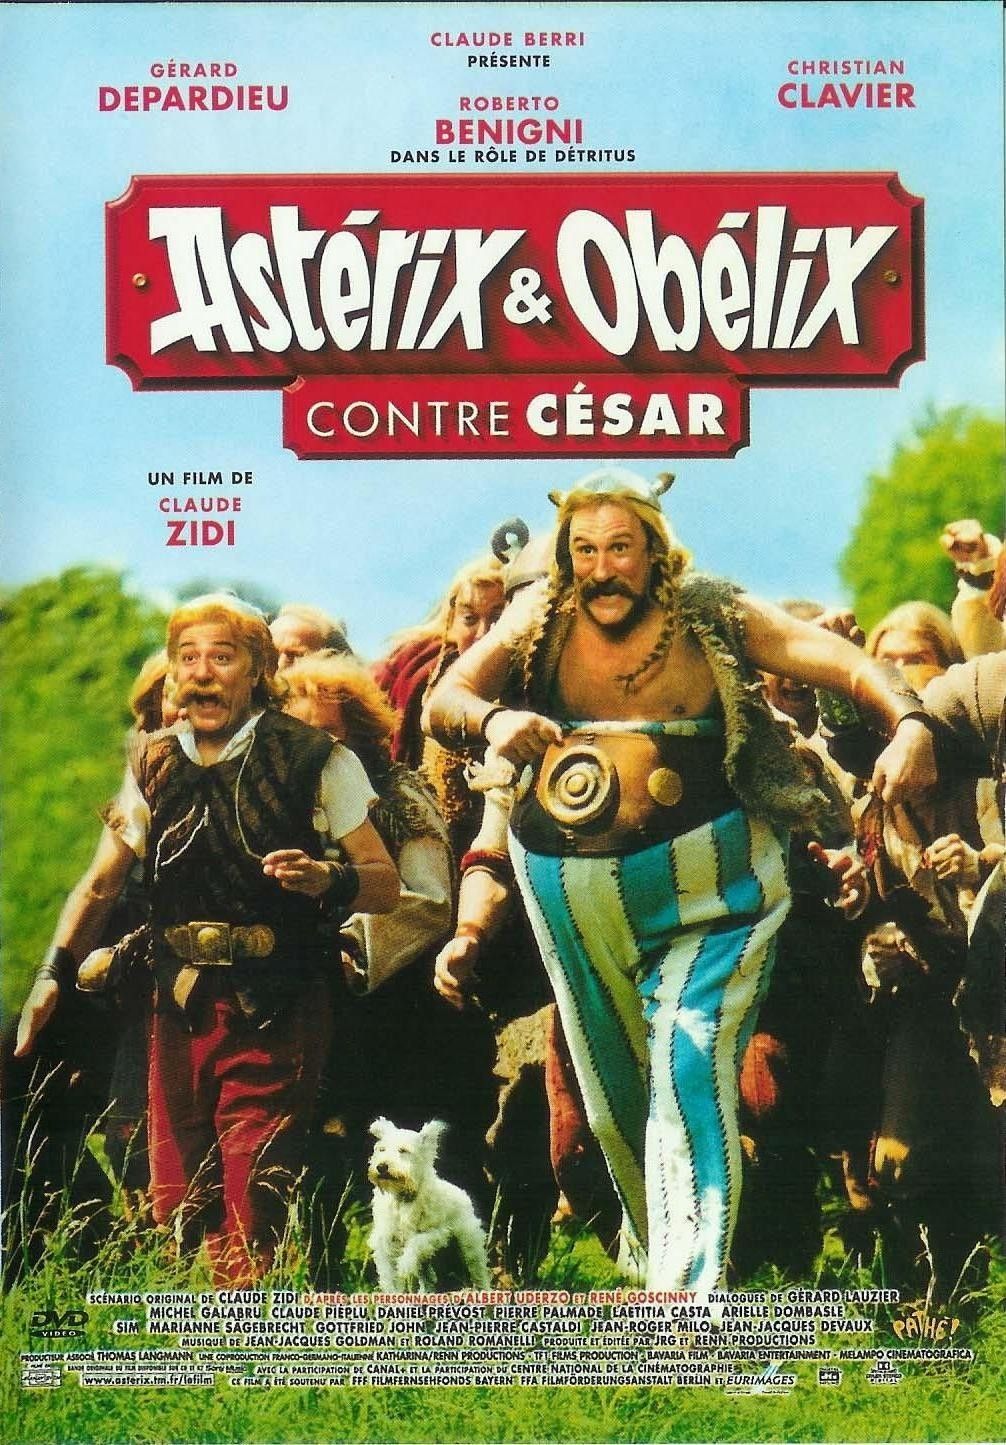 Asterix Obelix Contre Cesar Film 1999 Senscritique [ 1445 x 1006 Pixel ]